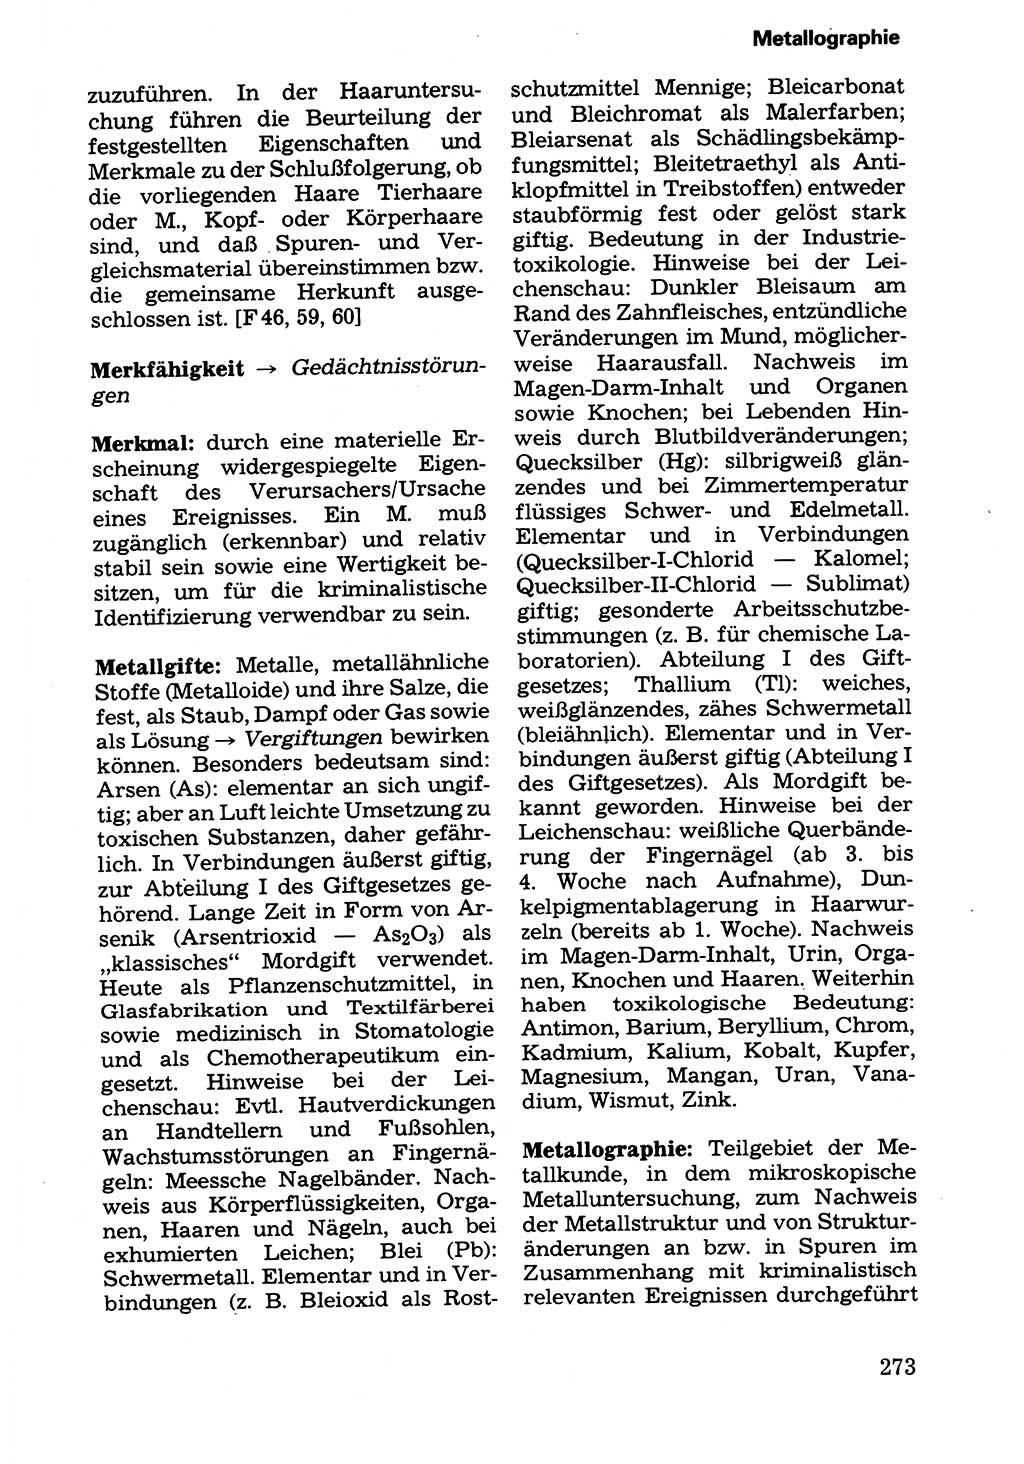 Wörterbuch der sozialistischen Kriminalistik [Deutsche Demokratische Republik (DDR)] 1981, Seite 273 (Wb. soz. Krim. DDR 1981, S. 273)